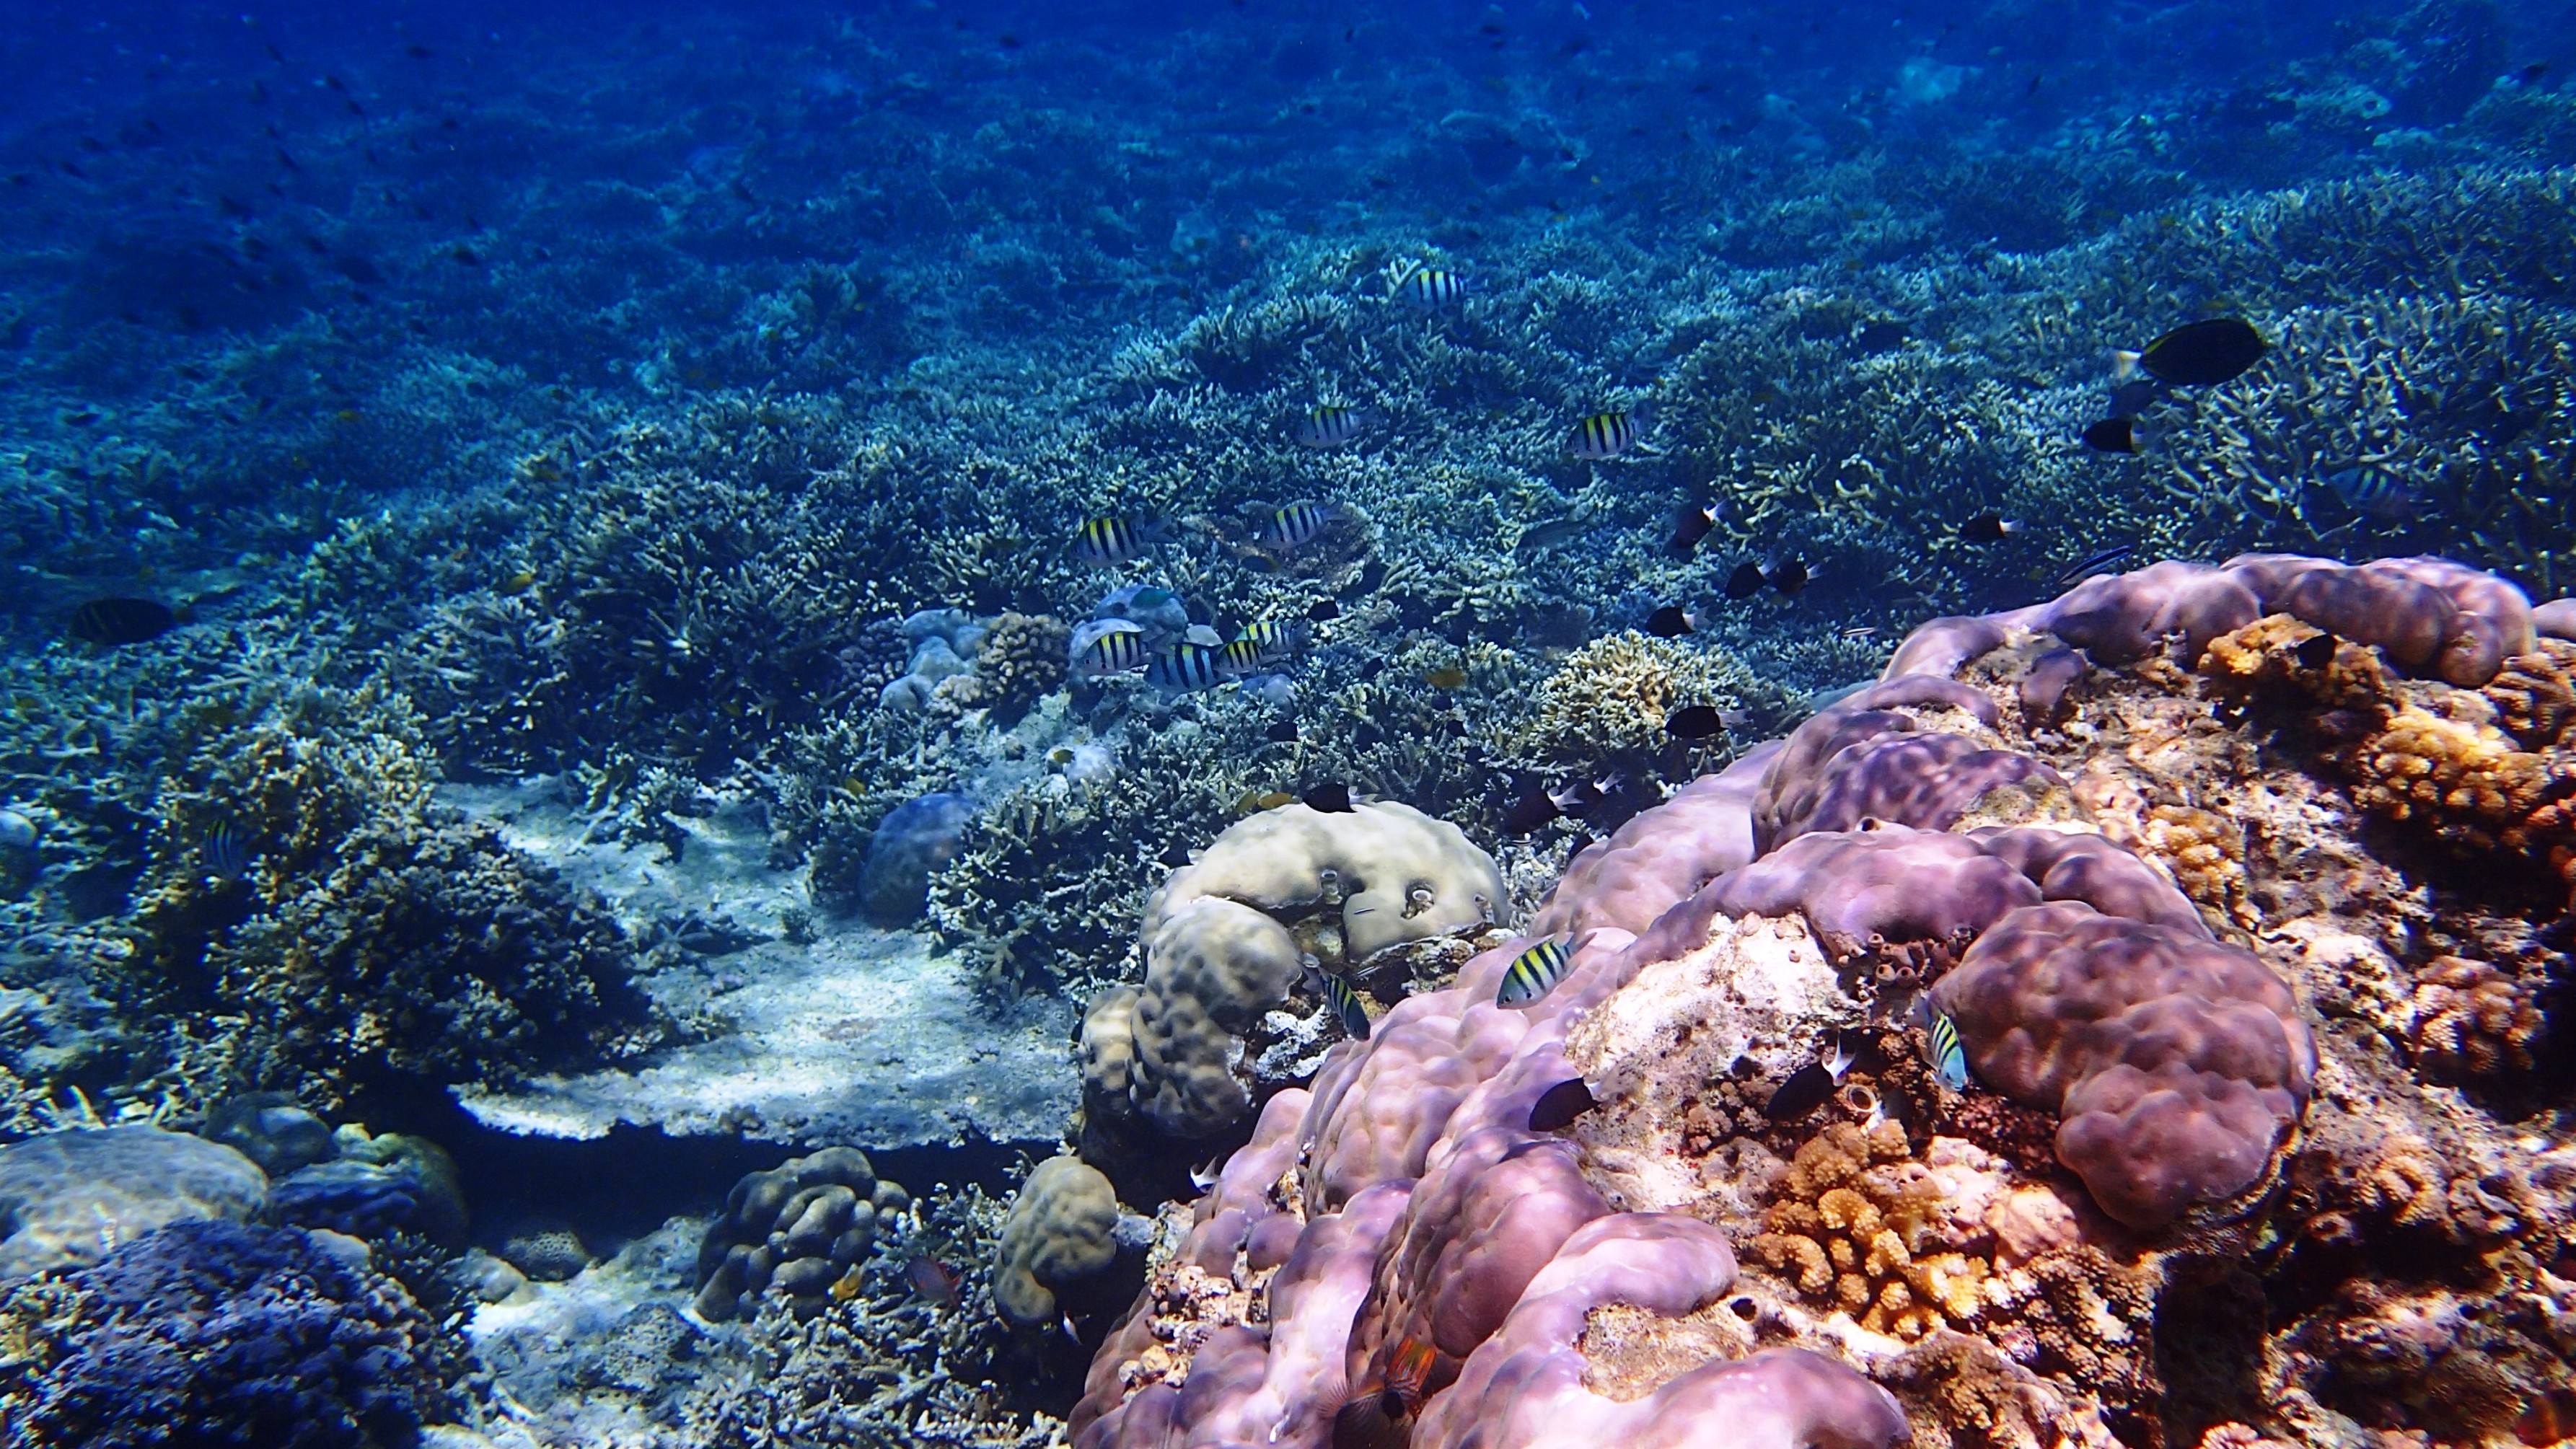 wallpaper pemandangan bawah laut bergerak,reef,coral reef,underwater,natural environment,marine biology